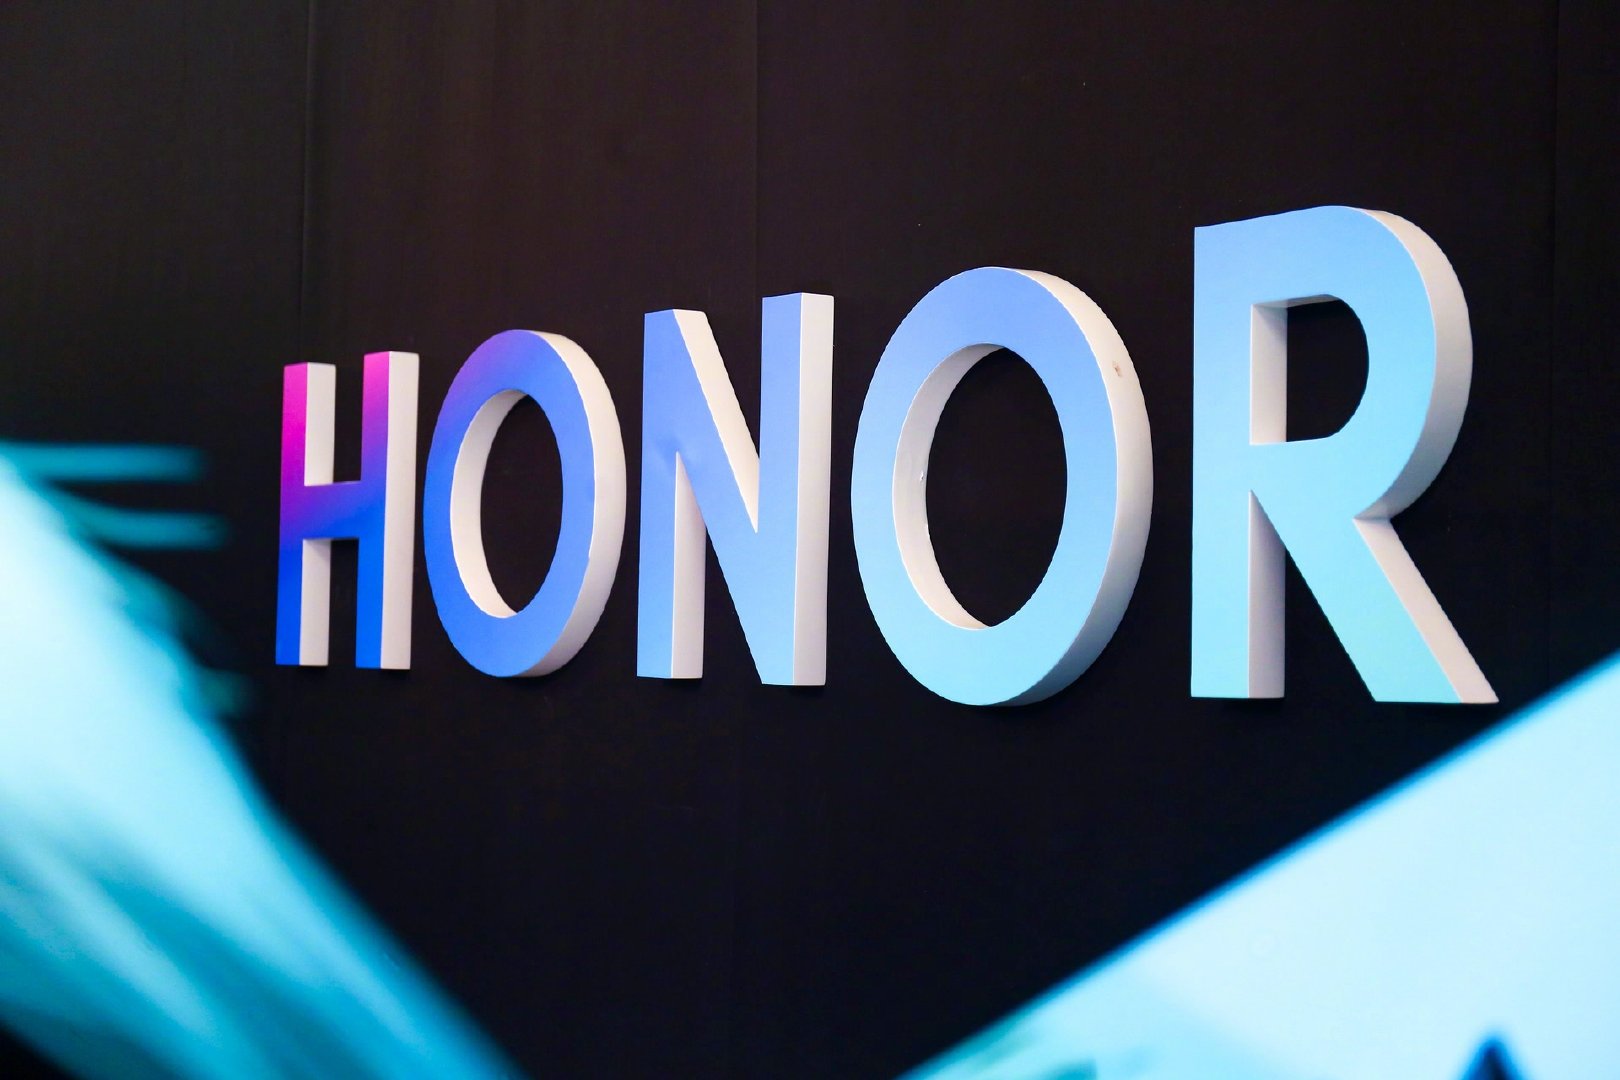 Huawei founder Ren Zhengfei hopes Honor to surpass its former parent company